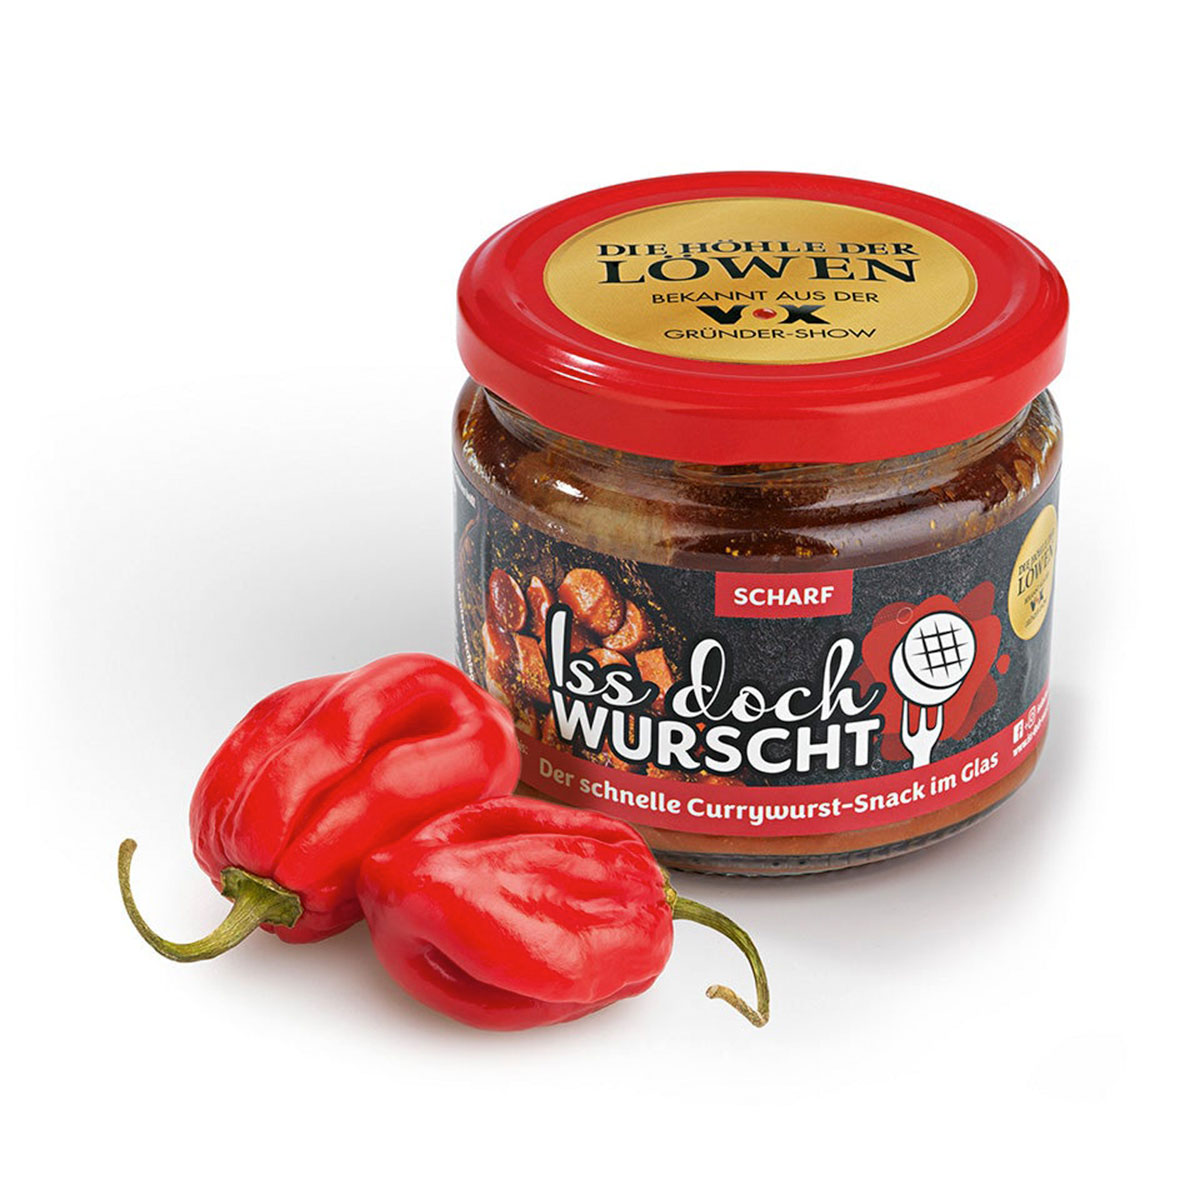 Currywurst-Snack Scharf - Iss Doch Wurscht, 250g